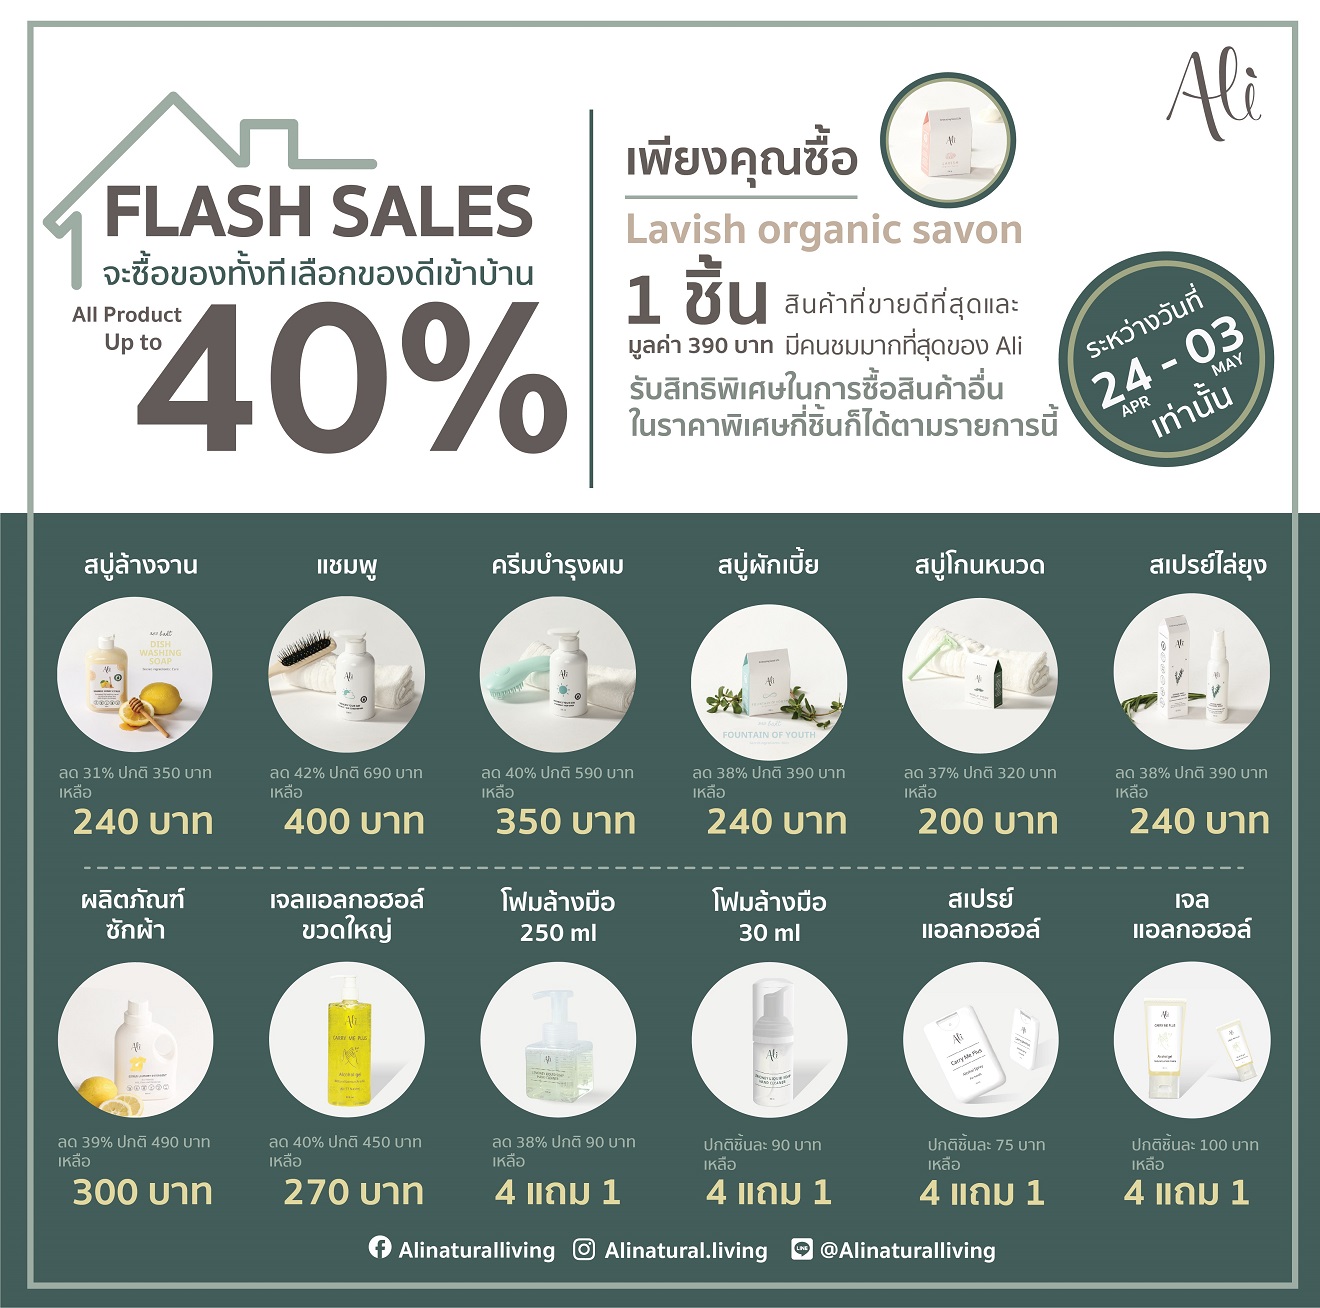 ขอเสนอข่าว โปรโมชั่น อัลลี่ (Ali) Flash Sales ลดจัดหนักถึง 40% ดังนี้